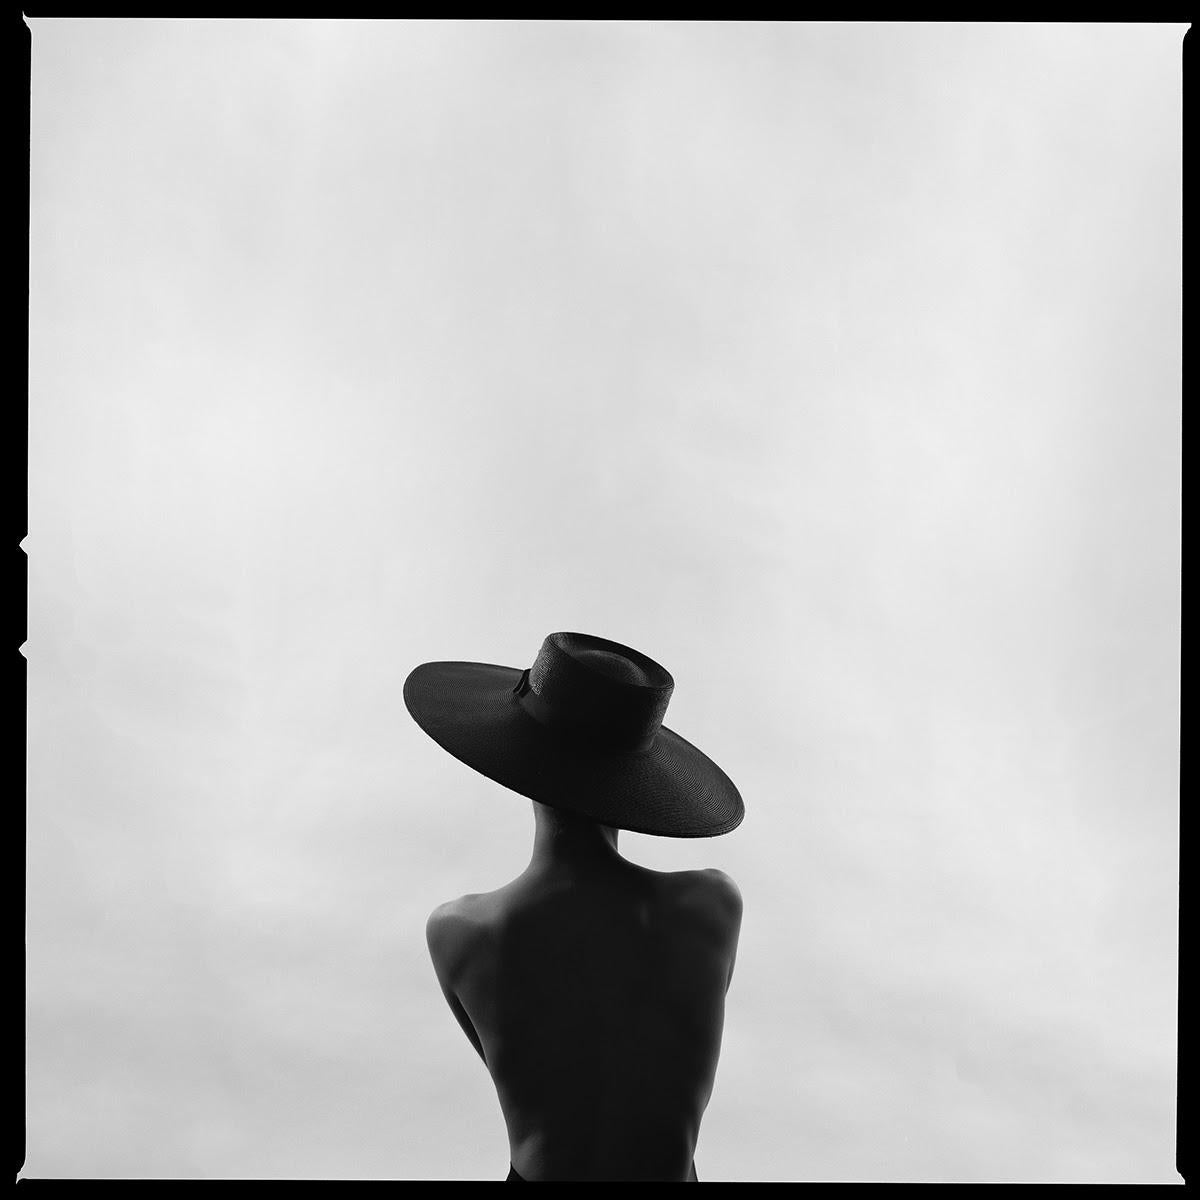 Série : Silhouette
Impression chromogène sur papier Kodak Endura Luster
Toutes les tailles et éditions disponibles :
18" x 18"
30" x 30"
45" x 45"
60" x 60"
70" x 70"
Éditions de 3 + 2 Artist Proofs

Tyler Shields est un photographe, réalisateur et